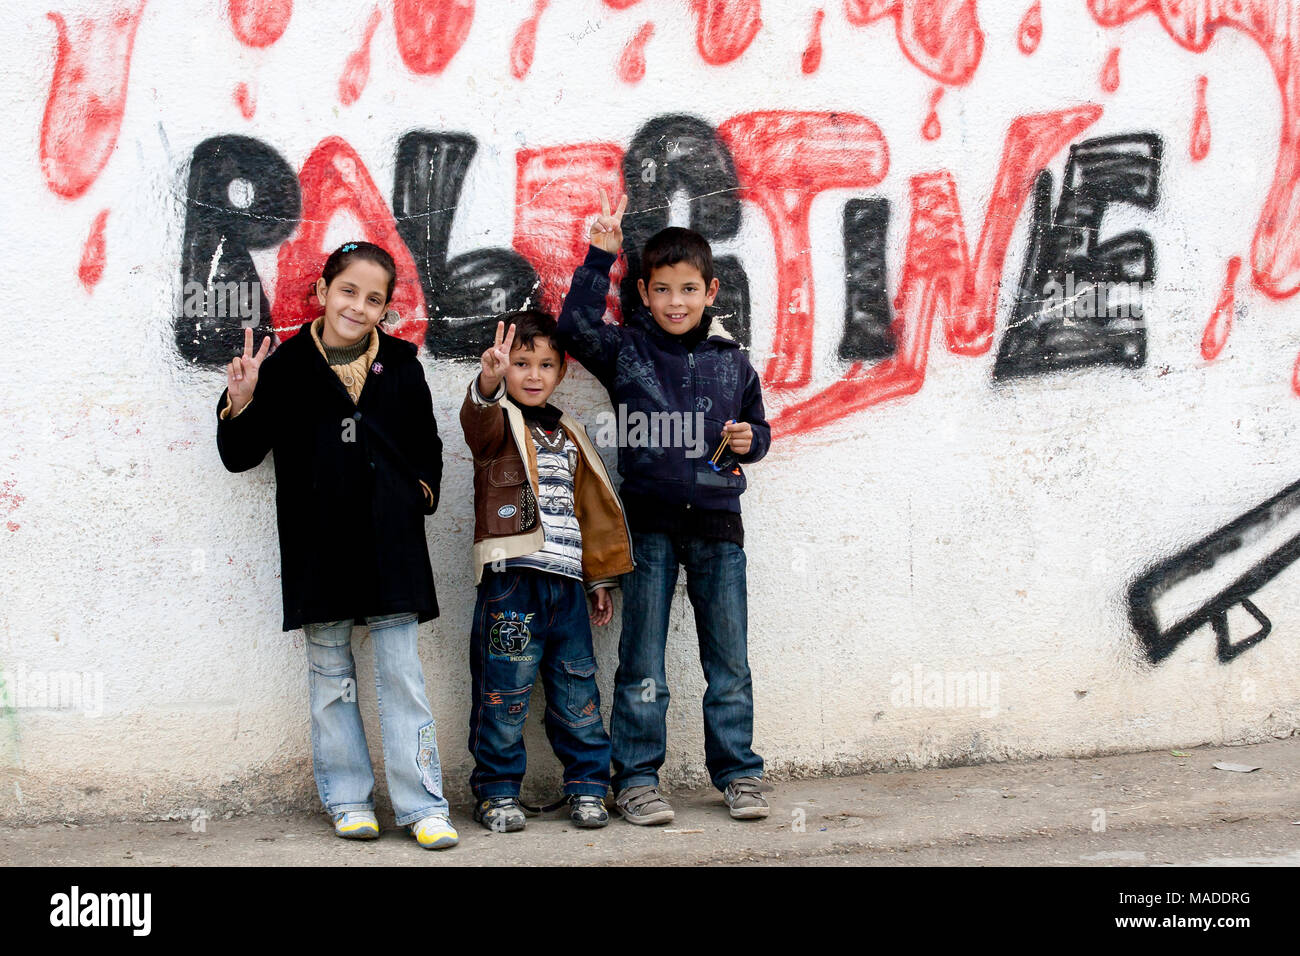 Bilin, Palestina, Diciembre 31, 2010: Los niños palestinos están de pie en la calle de Bilin delante de "sangriento" palestina graffiti. Foto de stock